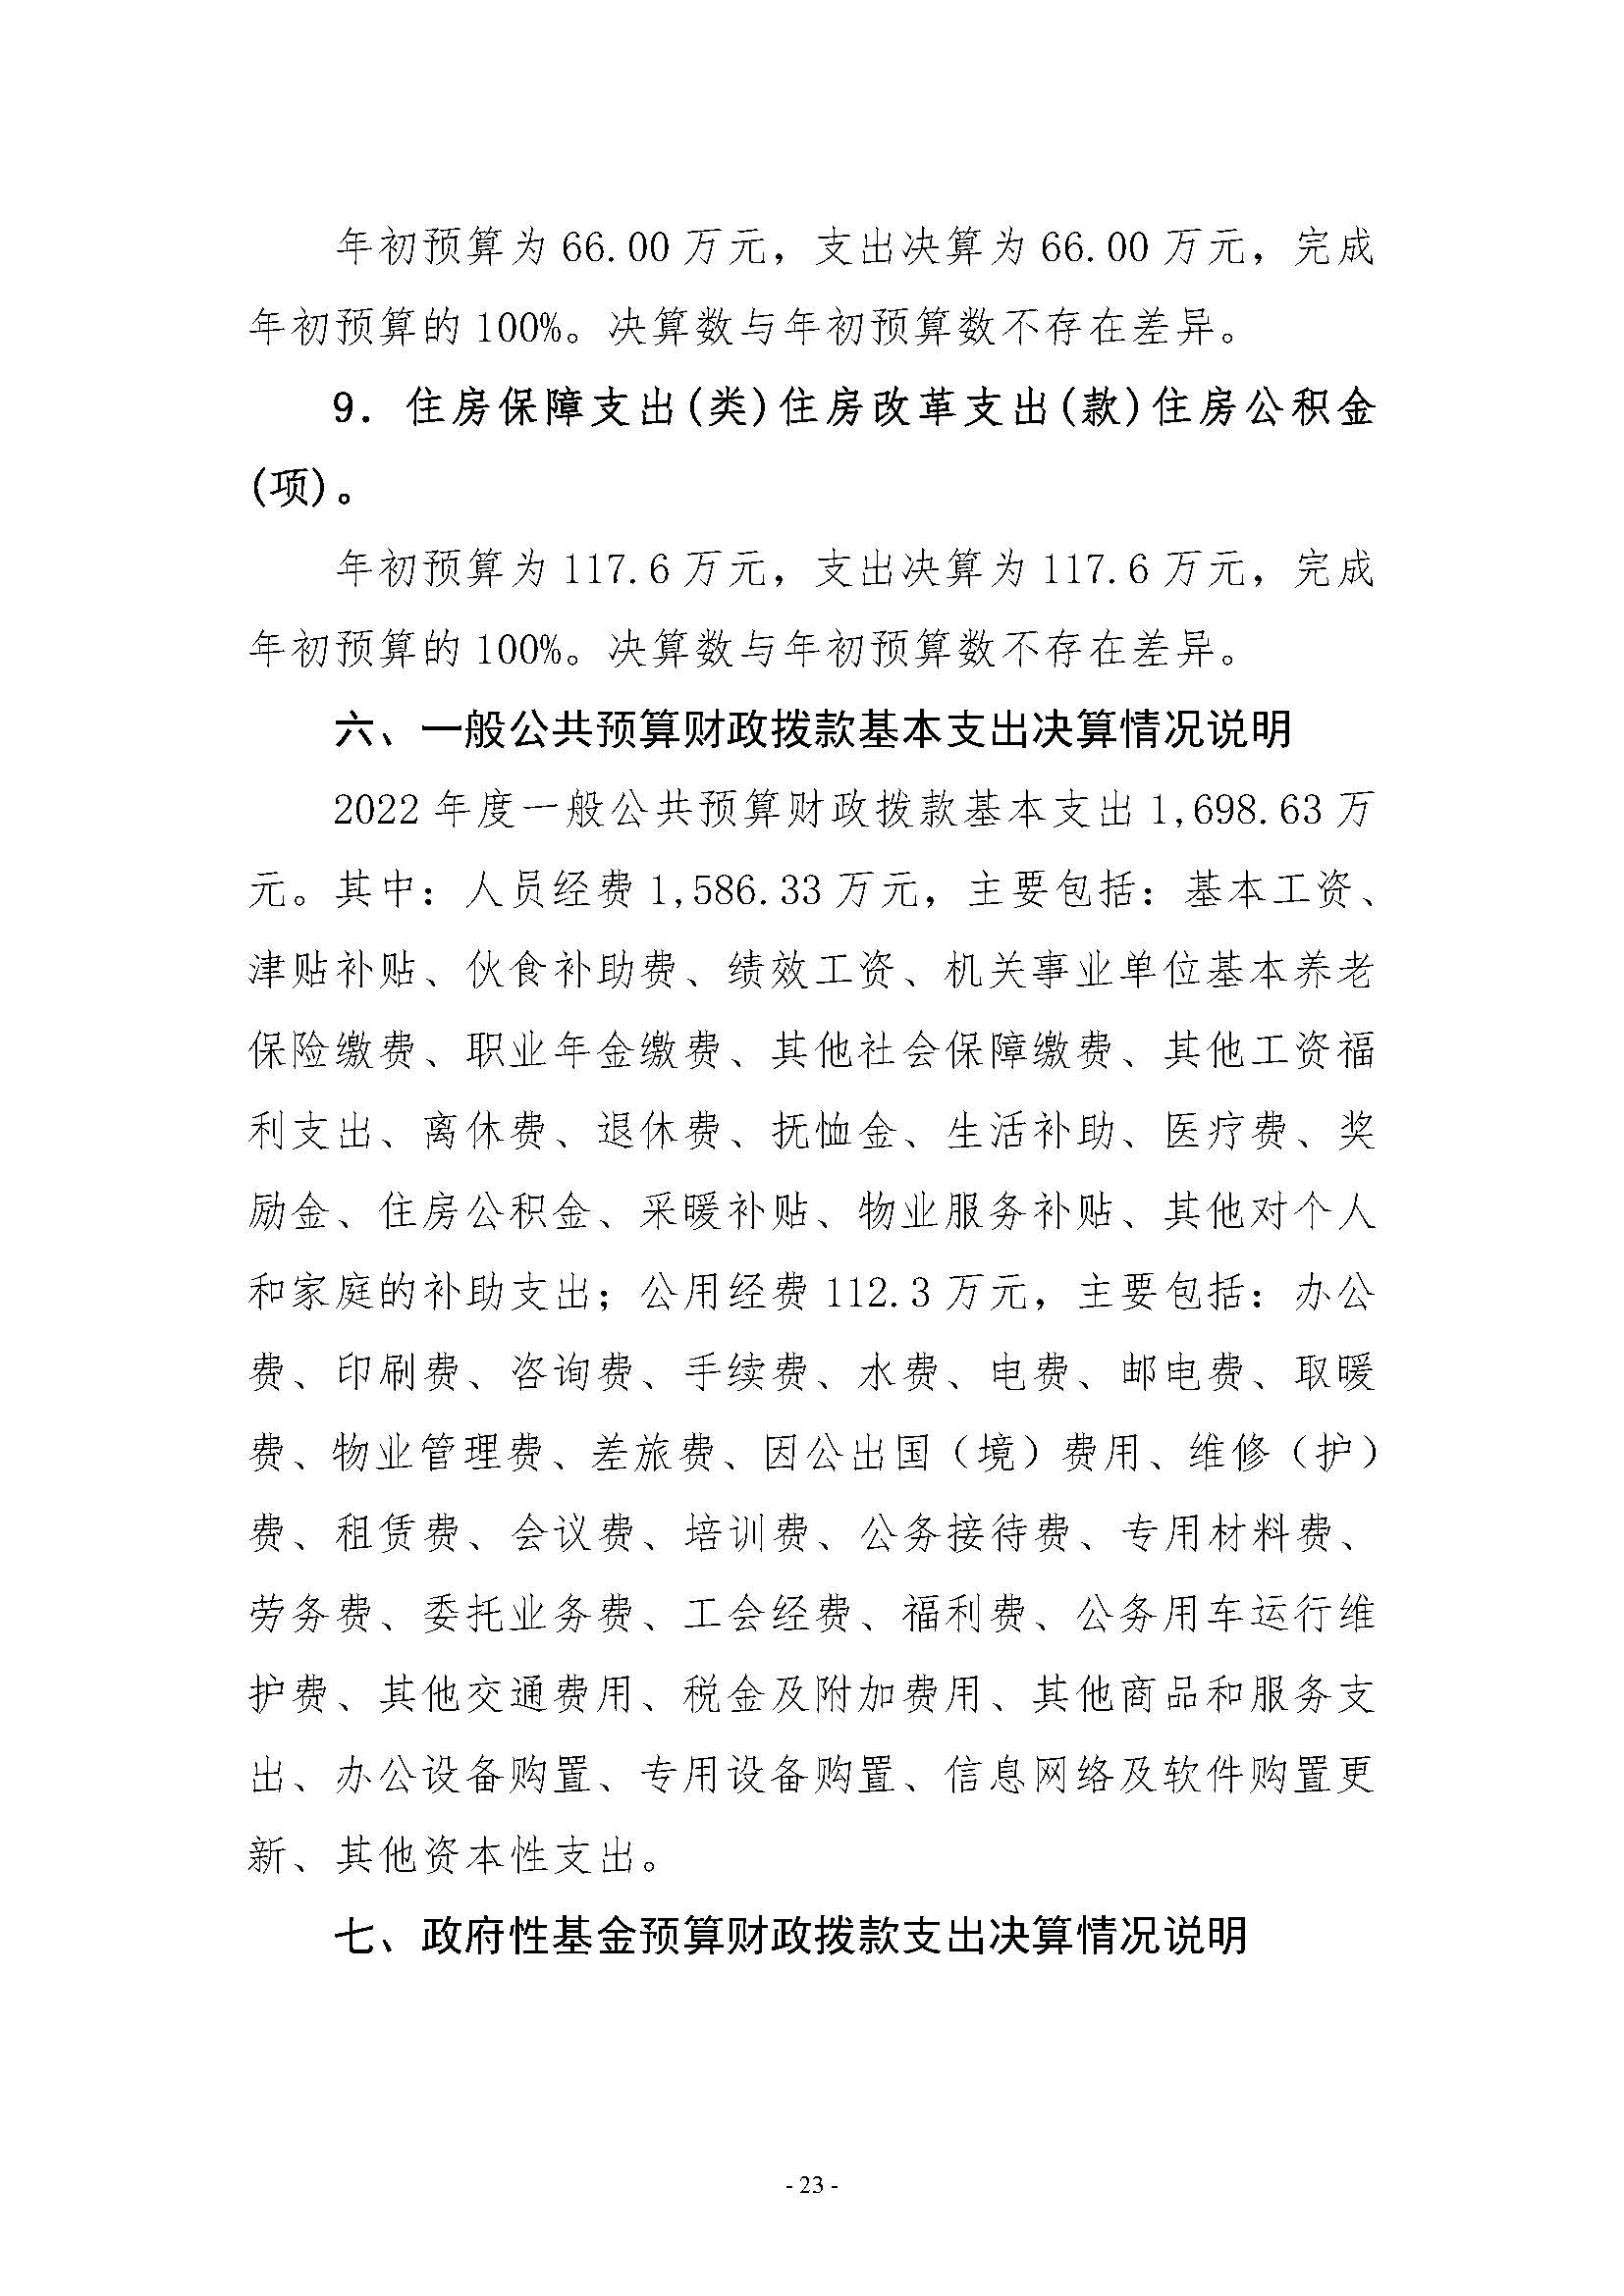 河南省水利科学研究院2022年年度省直部门决算公开(2)(2)_页面_23.jpg